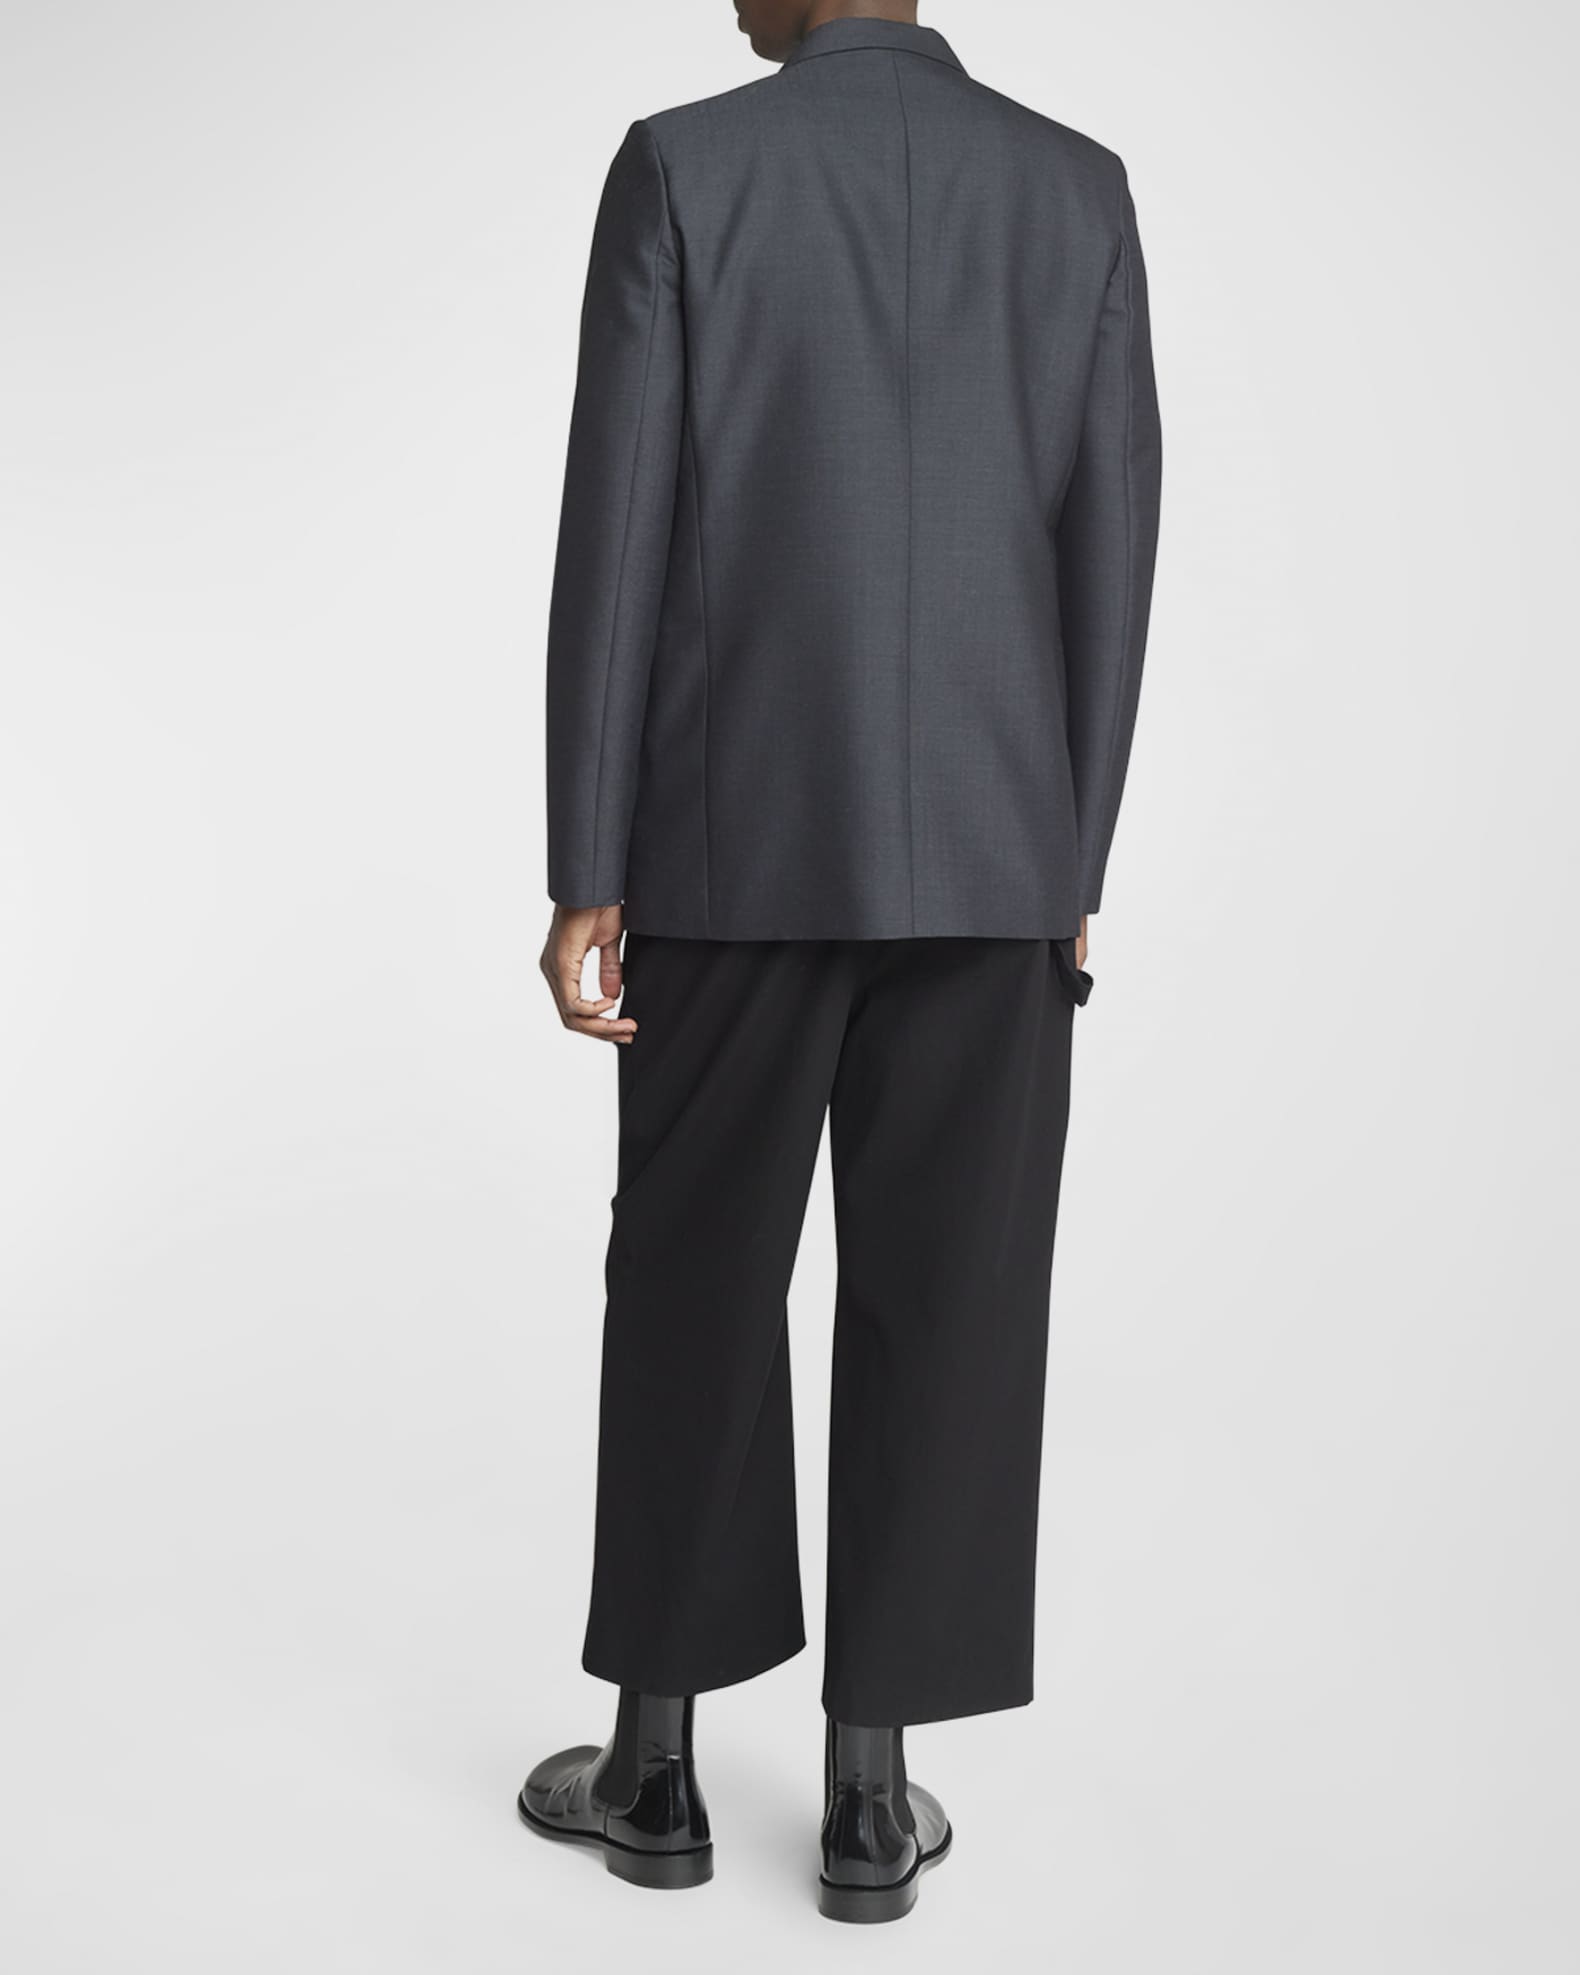 Loewe Men's Single-Breasted Wool-Blend Sport Coat | Neiman Marcus